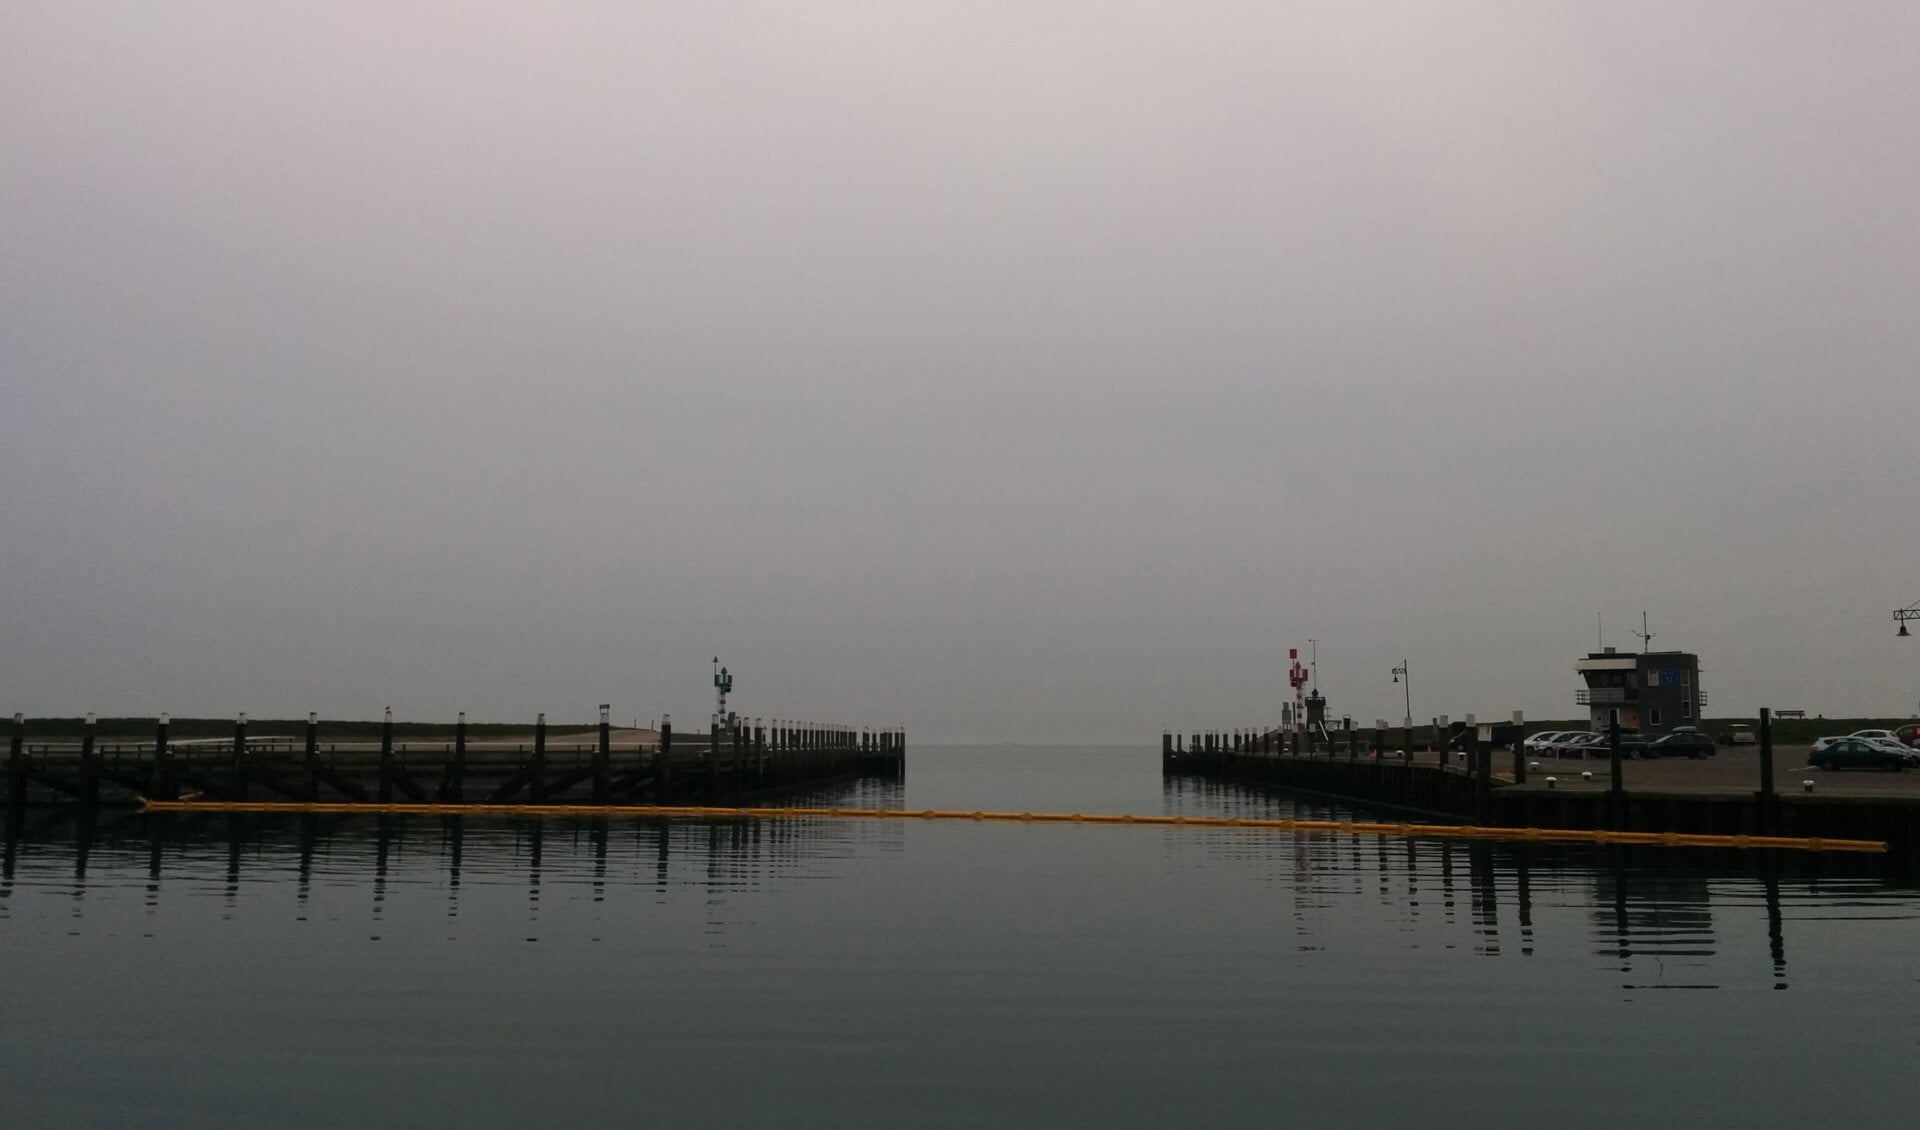 De haven van Oudeschild is nu afgesloten met een geel scherm.